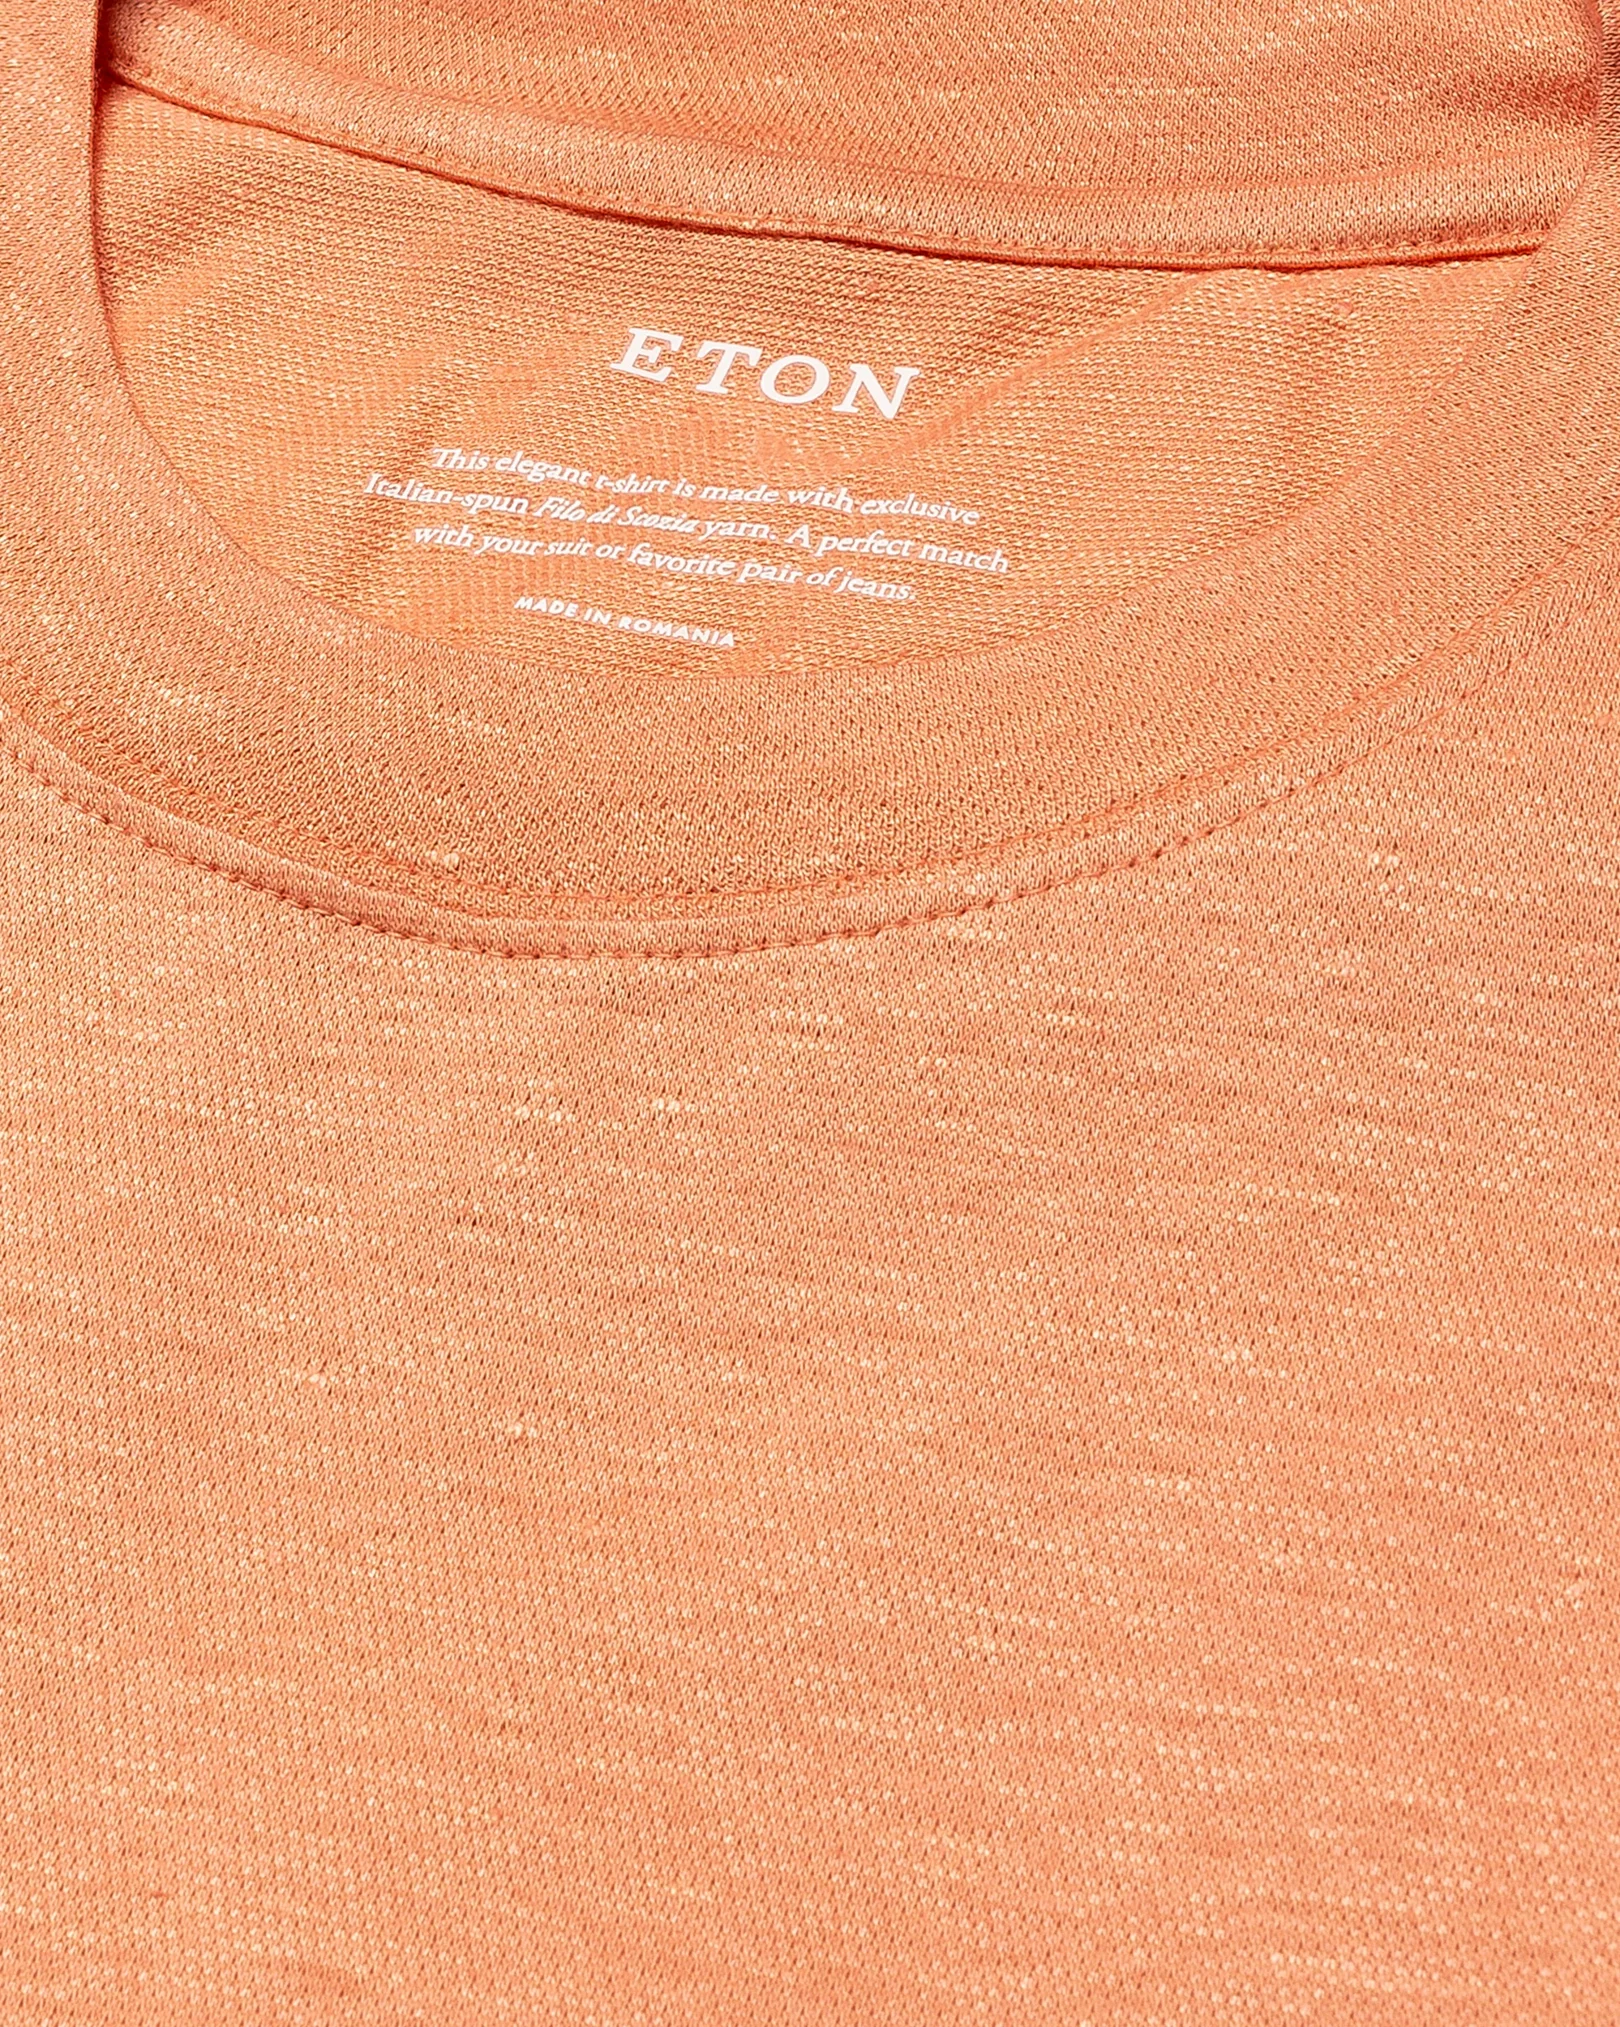 Eton - orange pique t shirt